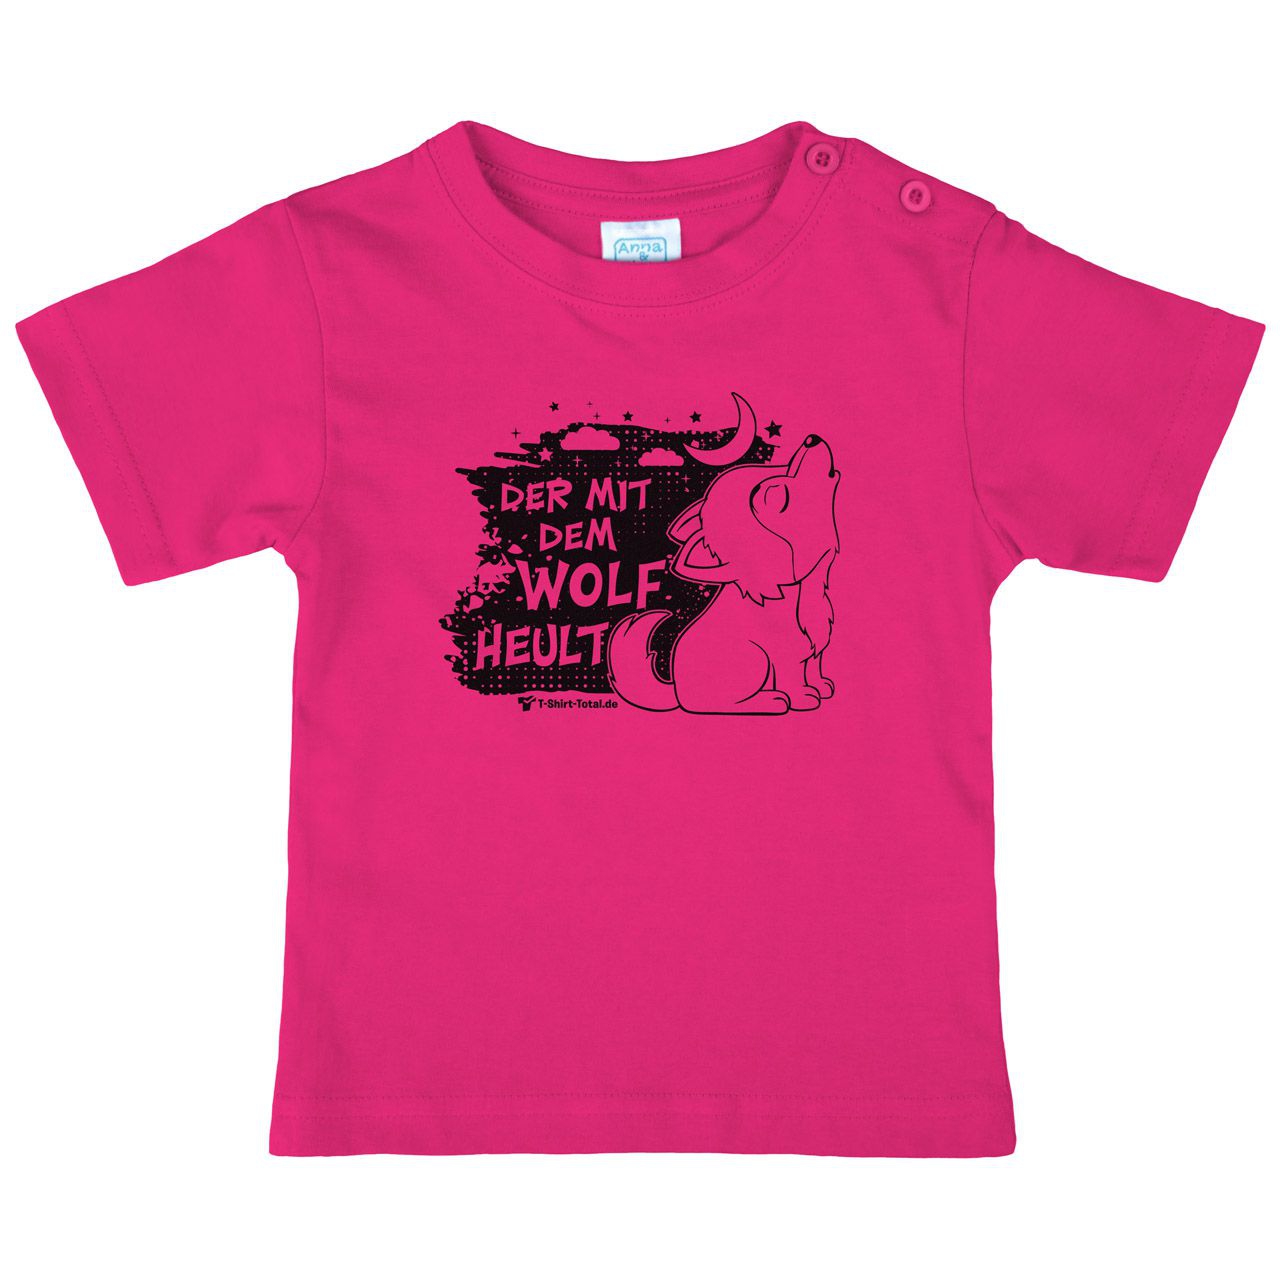 Der mit dem Wolf Kinder T-Shirt pink 80 / 86